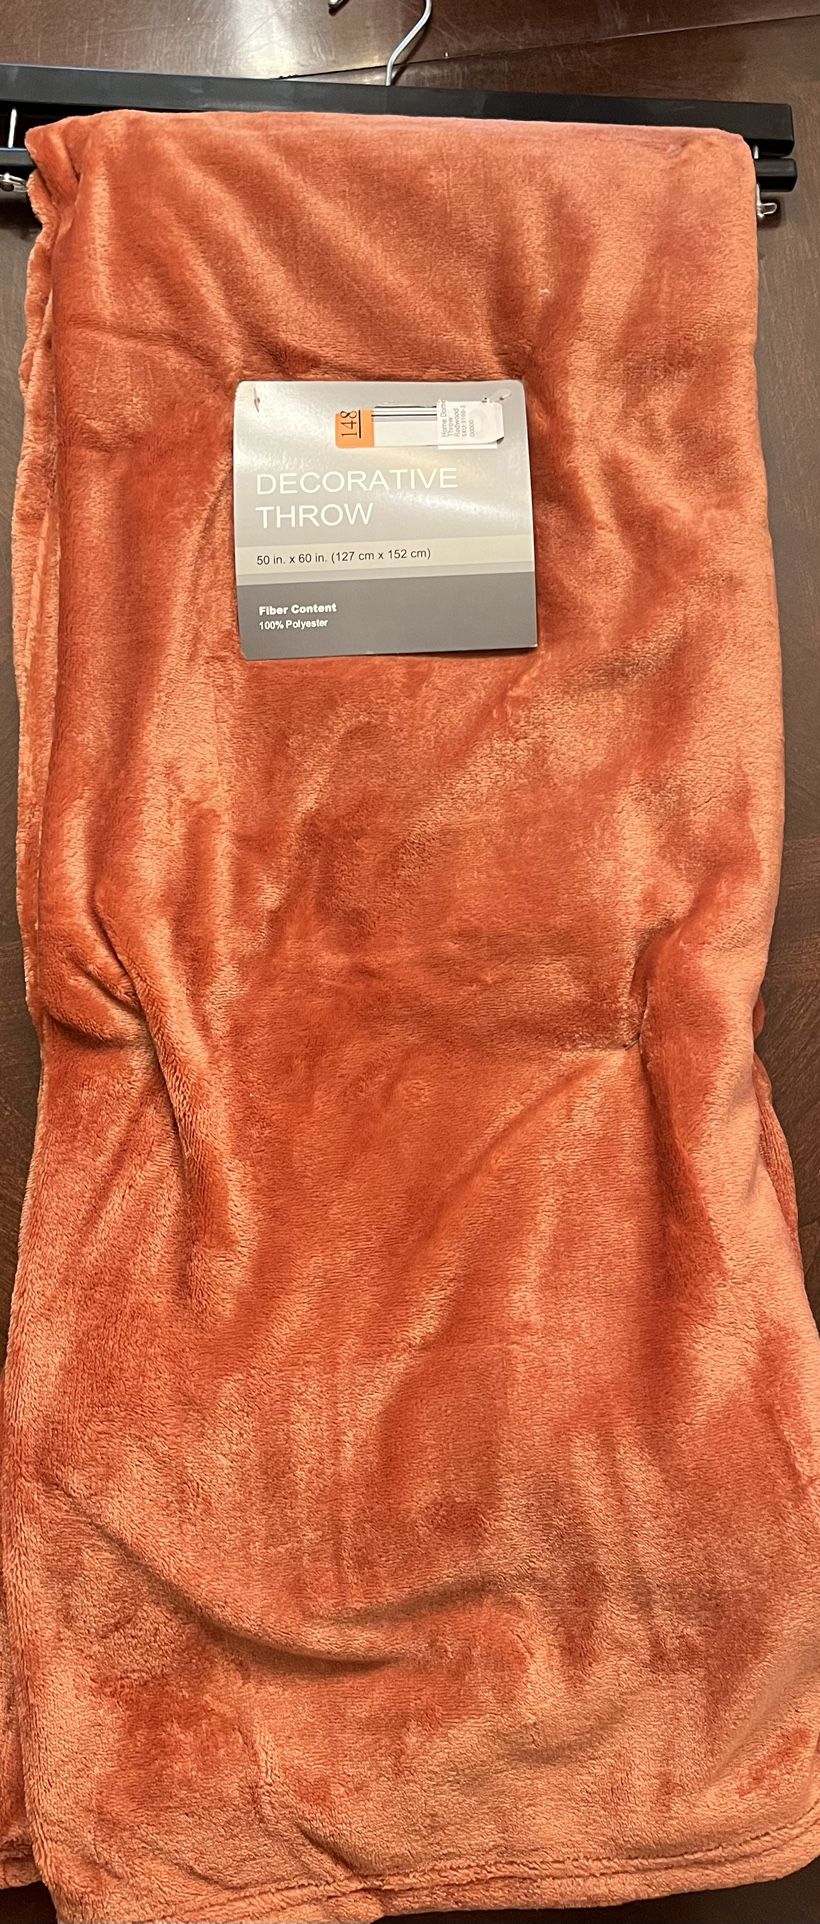 Redwood Throw Blanket, 50”x60”, super soft & warm